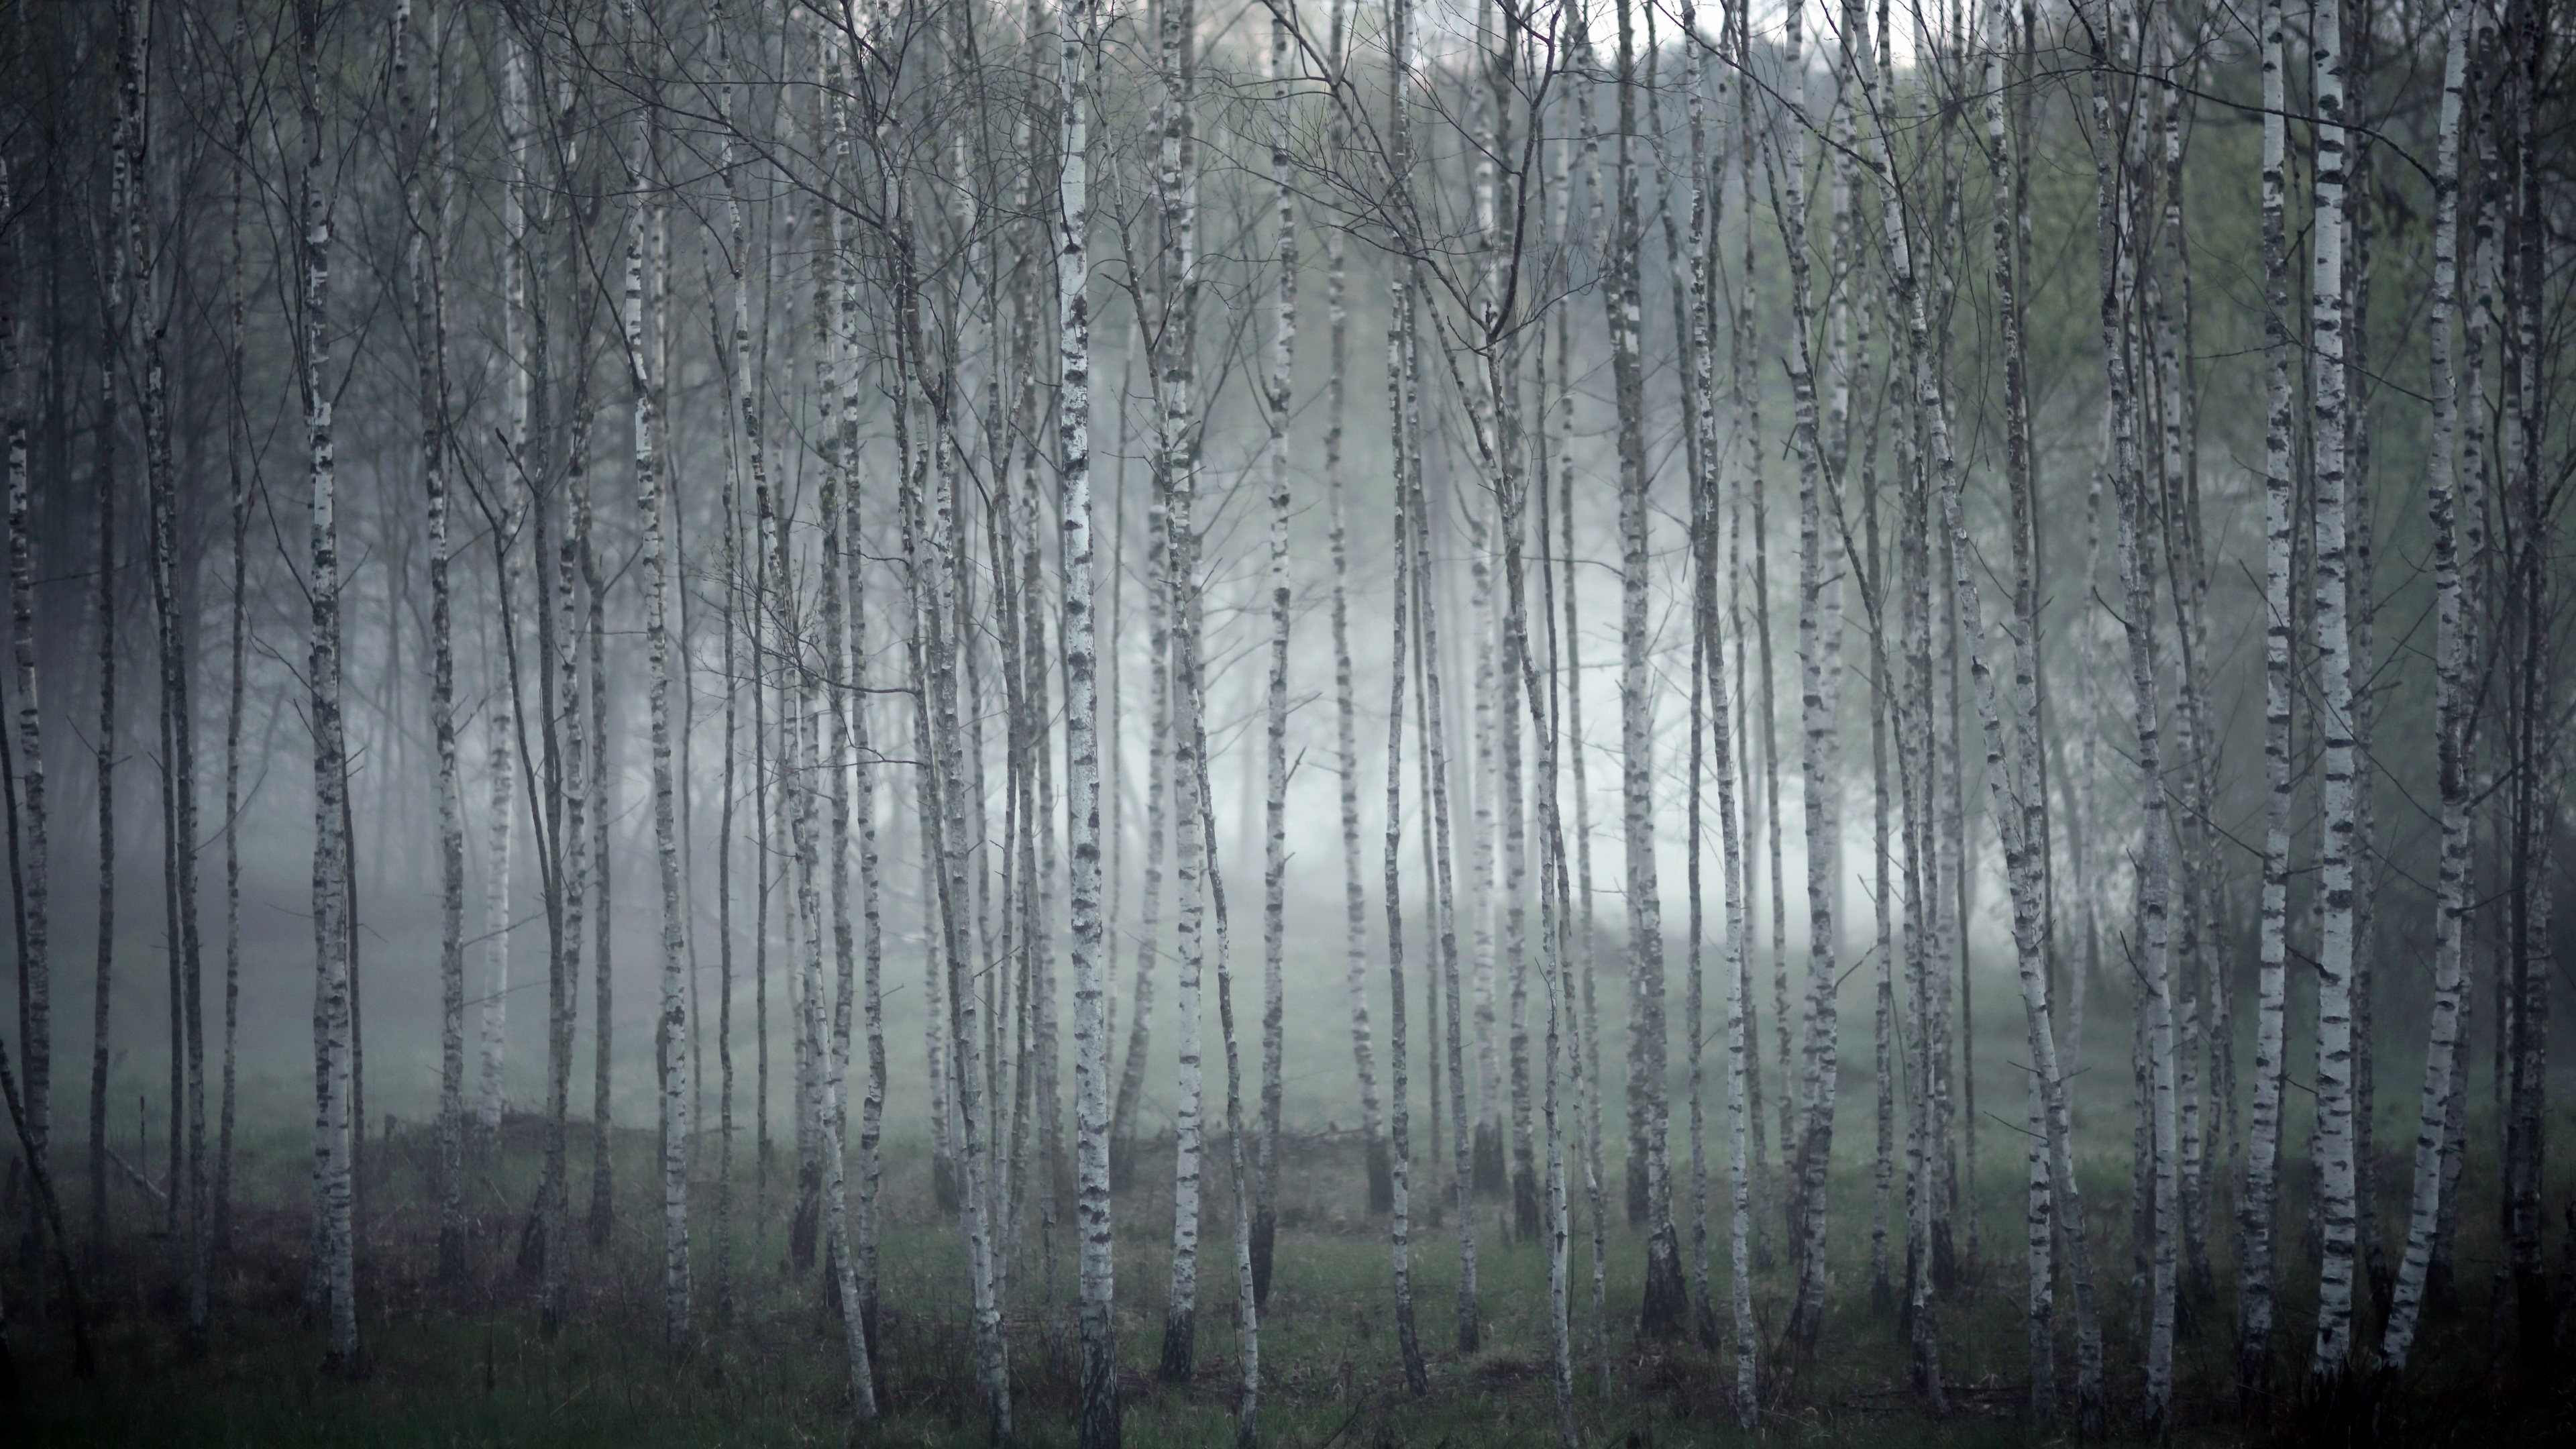 Birch grove. Березовый лес. Березовый лес в тумане. Березы в тумане. Березовая роща в тумане.